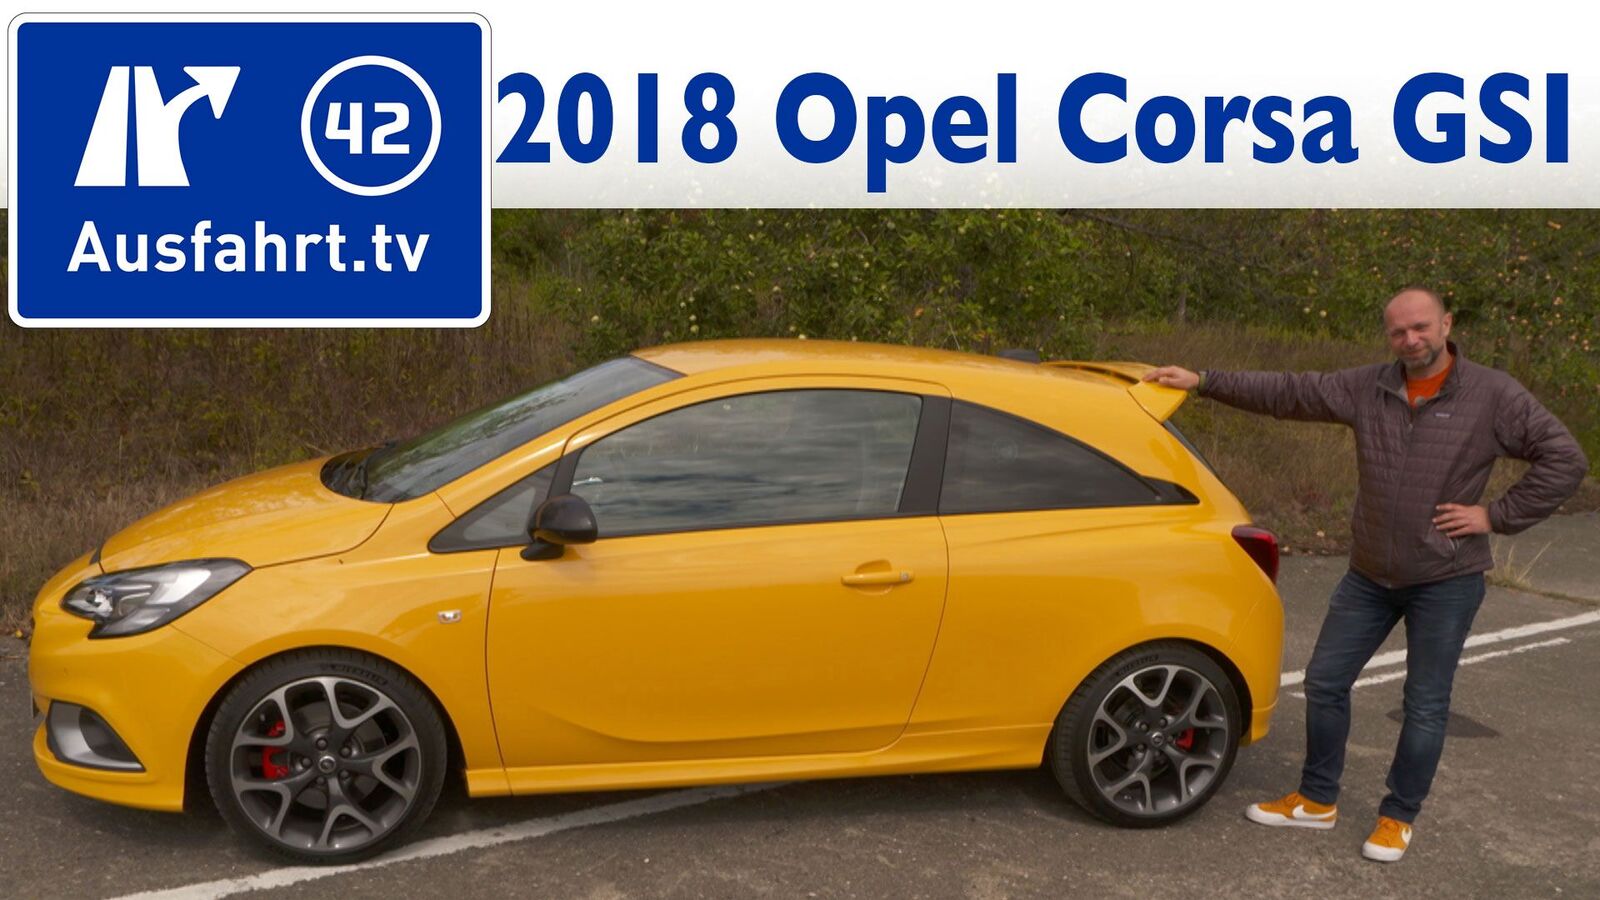 2018 Opel Corsa GSI 1.4 Turbo 150 PS –